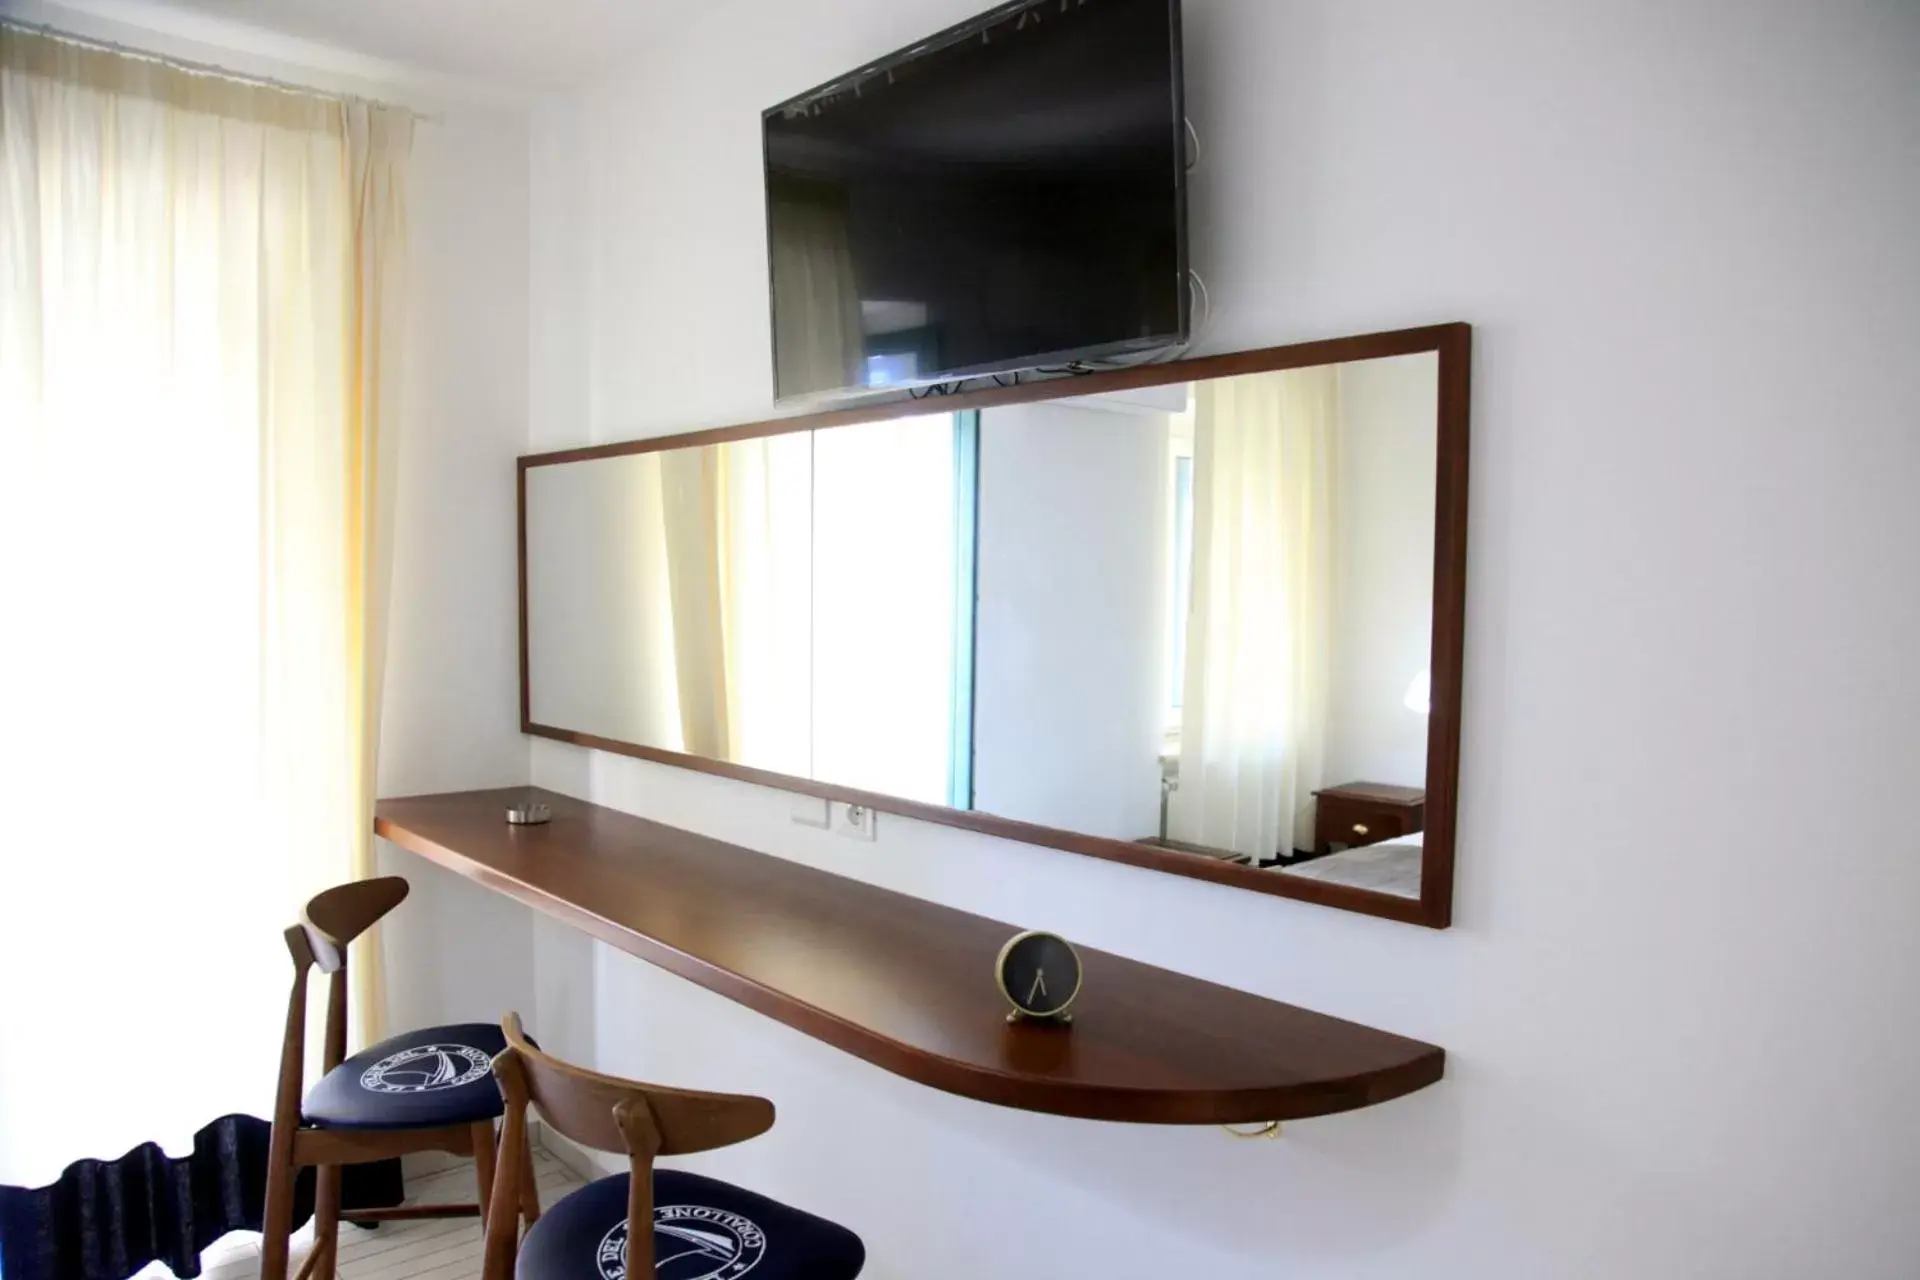 Bedroom, TV/Entertainment Center in Le Tolde del Corallone